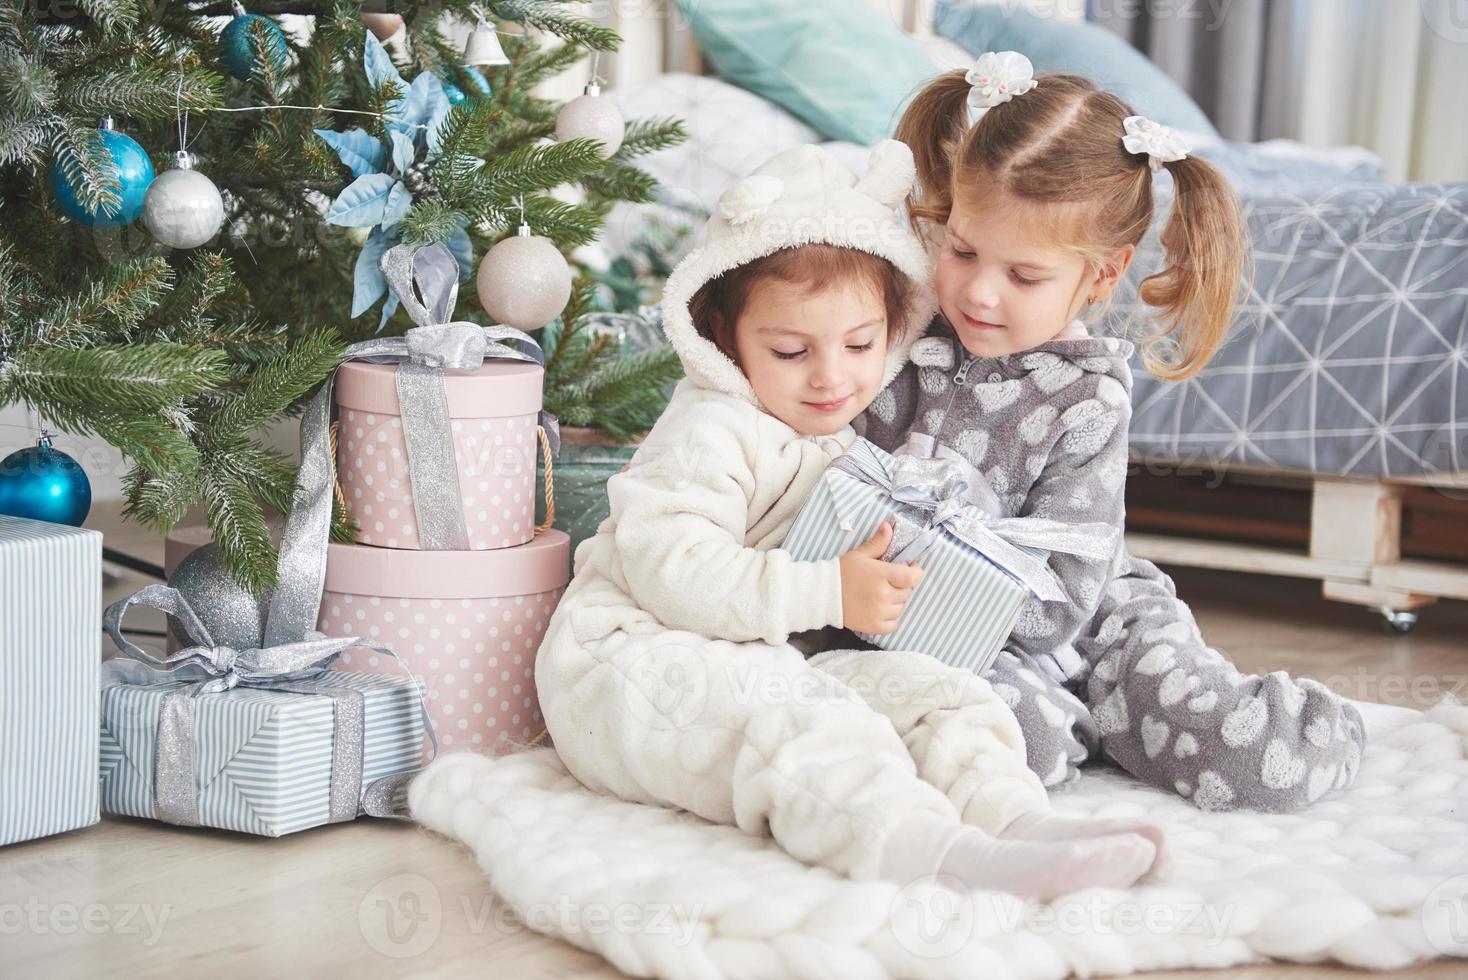 zwei kleine schwestermädchen öffnen morgens ihre geschenke am weihnachtsbaum auf dem deck foto